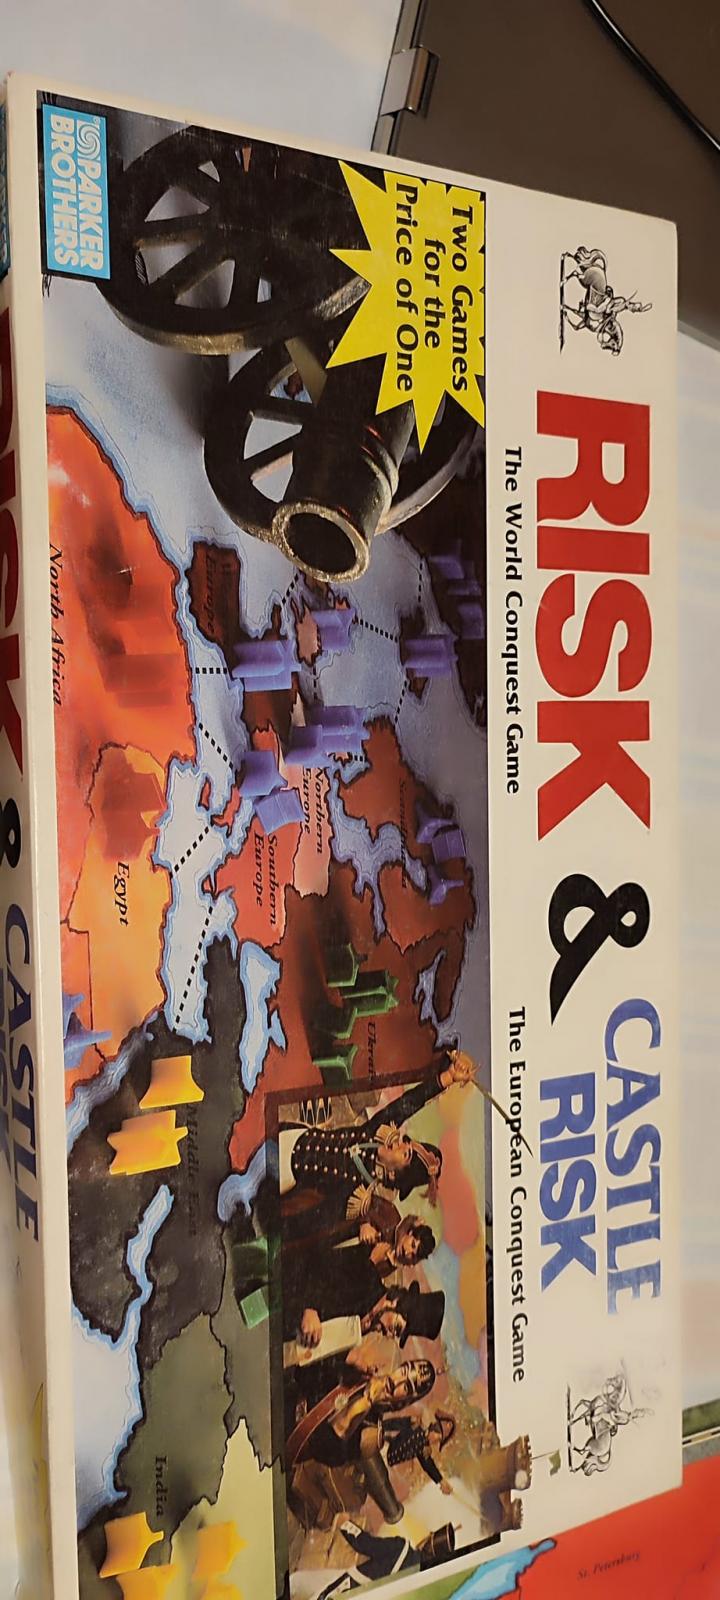 Nome:   risk & castle risk 1.jpg
Visite:  12
Grandezza:  160.0 KB